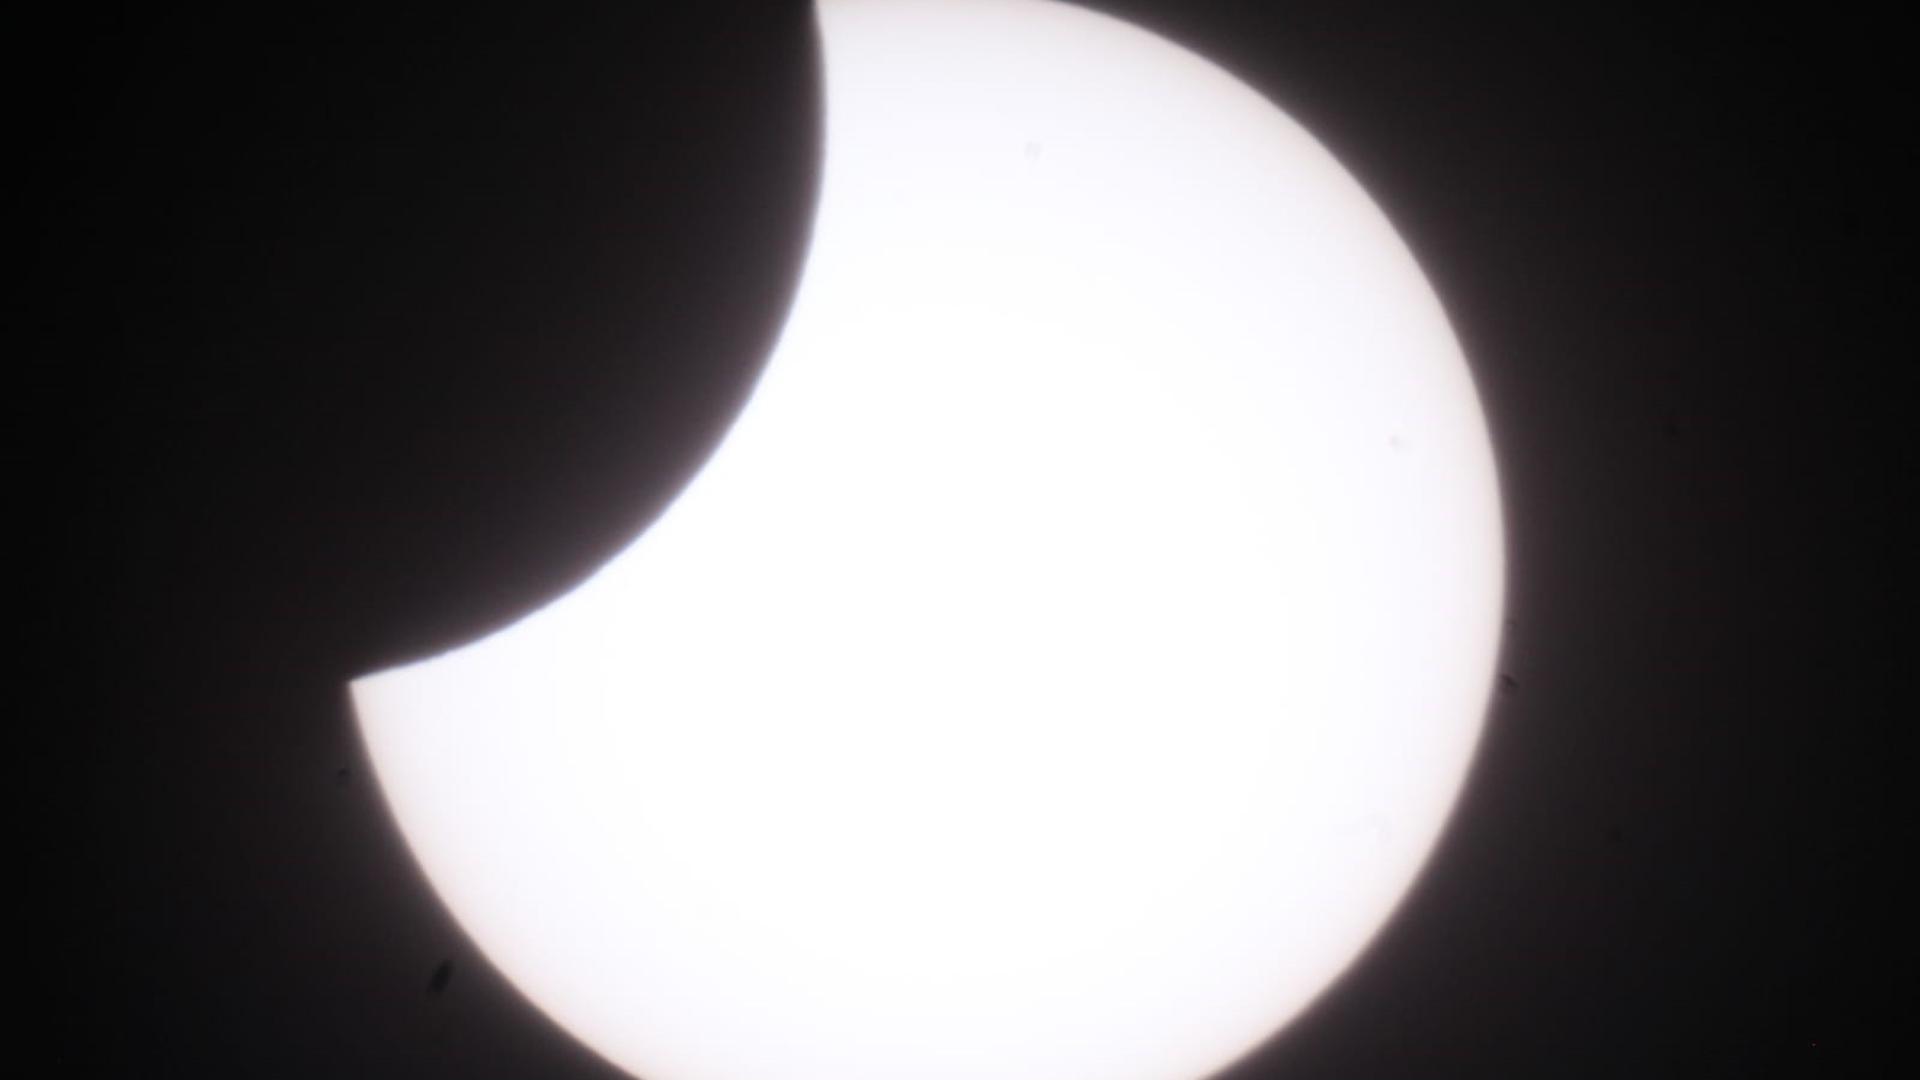 Eines der Teleskope war mit einer Kamera ausgestattet. Damit haben die Sternfreunde dieses Bild von der partiellen Sonnenfinsternis aufgenommen.